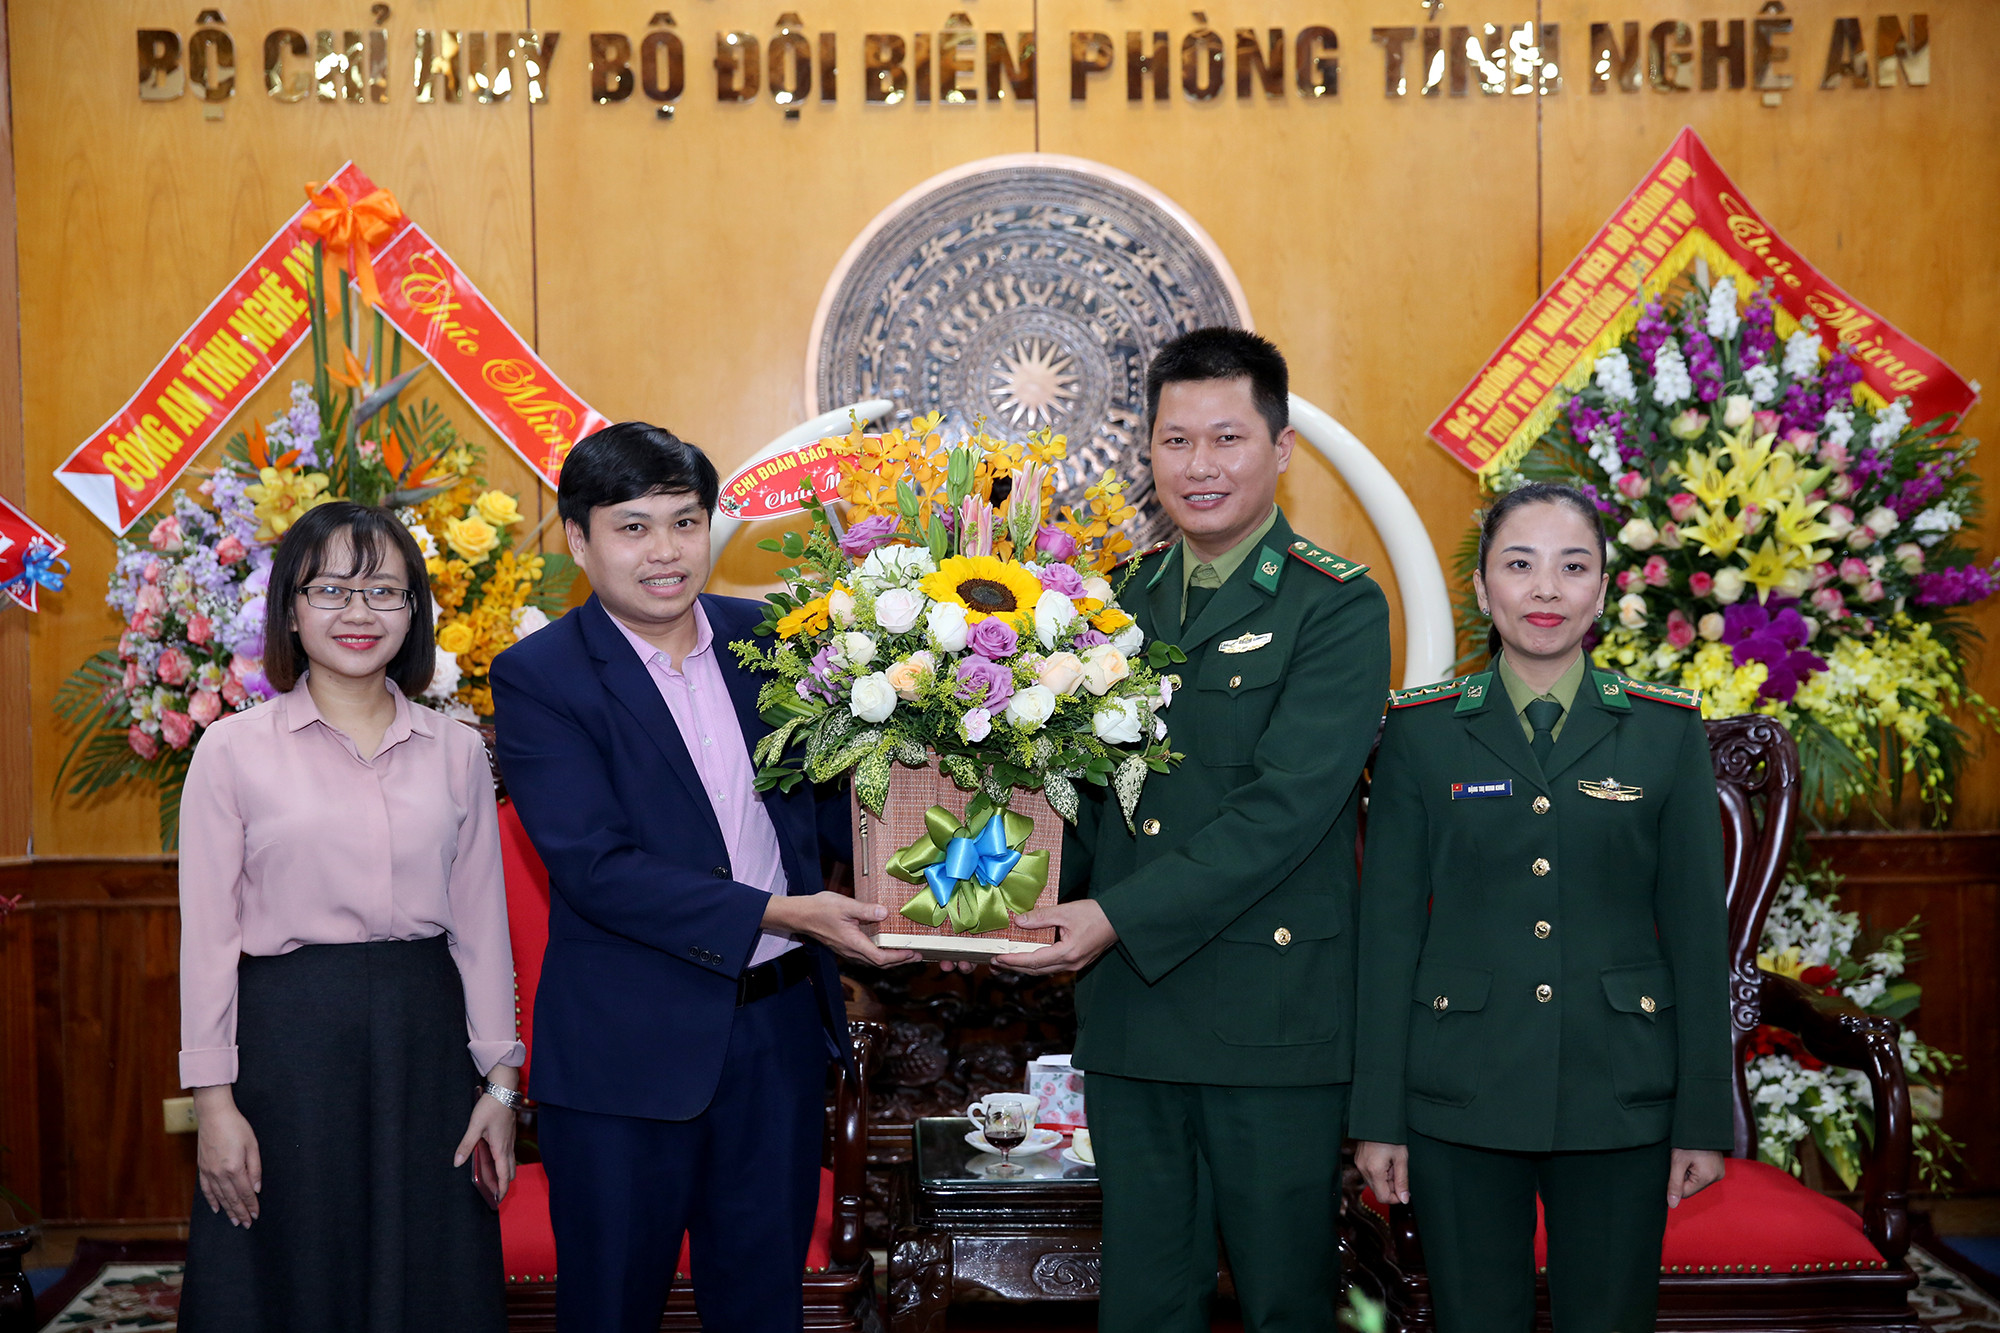 Dịp này Đoàn thanh niên Báo Nghệ An cũng tặng lẵng hoa chúc mừng đoàn thanh niên Bộ đội Biên phòng tỉnh. Ảnh: Đức Anh